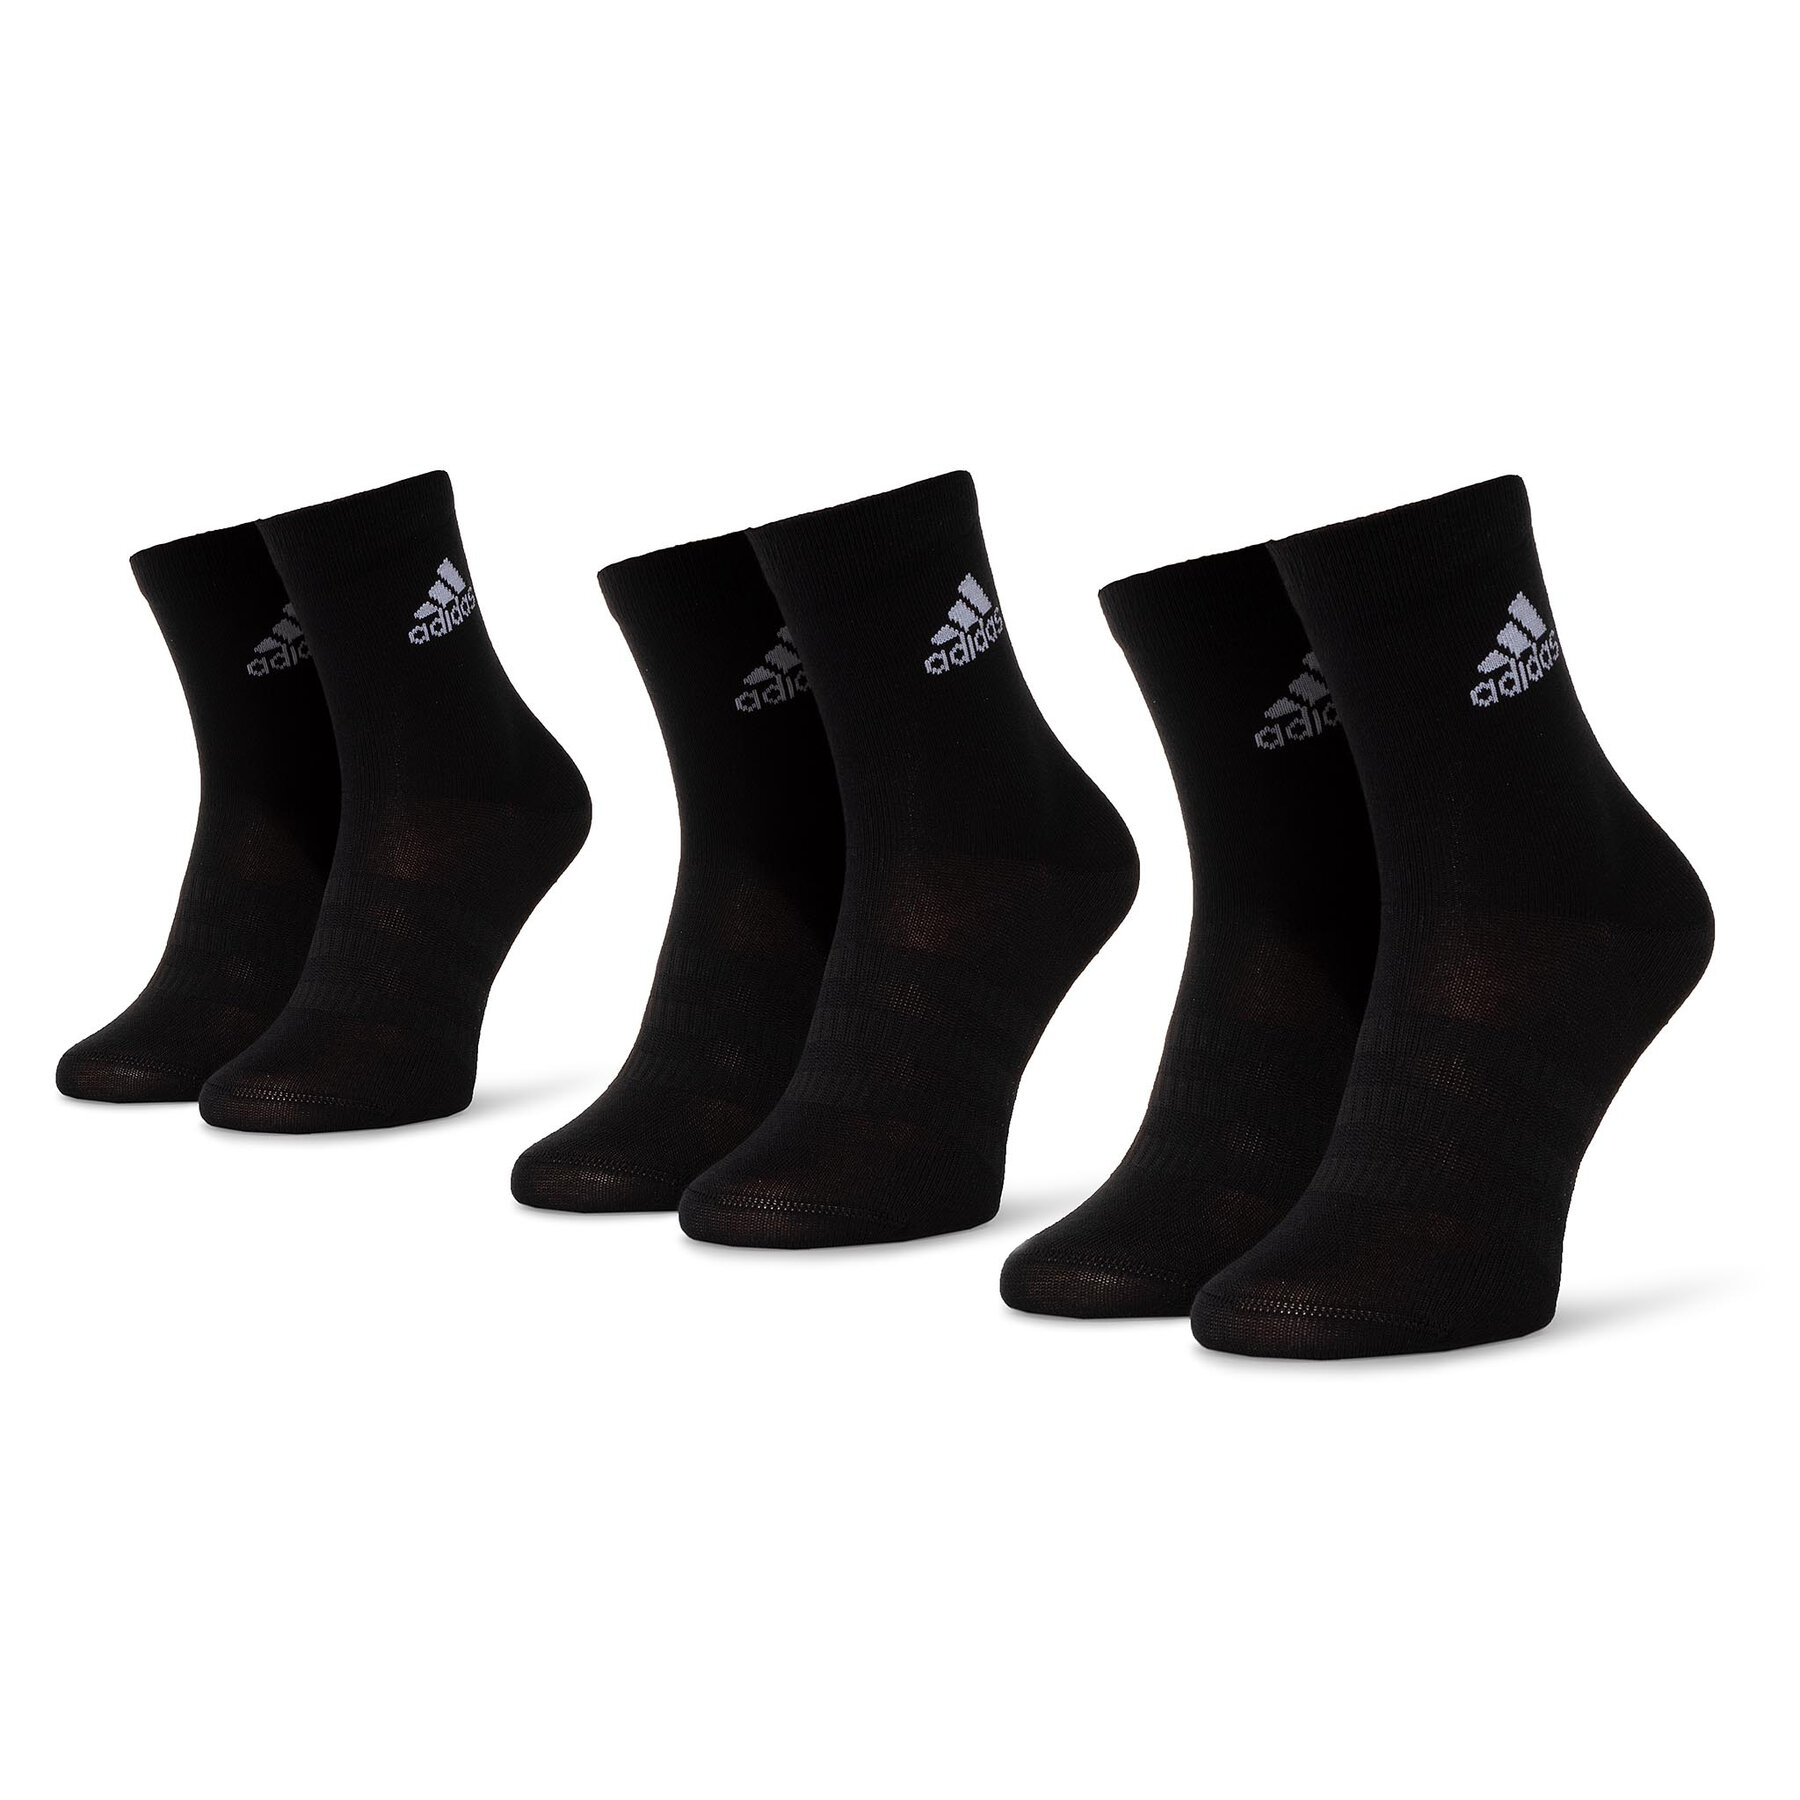 3er-Set hohe Unisex-Socken adidas Light Crew 3pp DZ9394 Black/Black/Black von Adidas